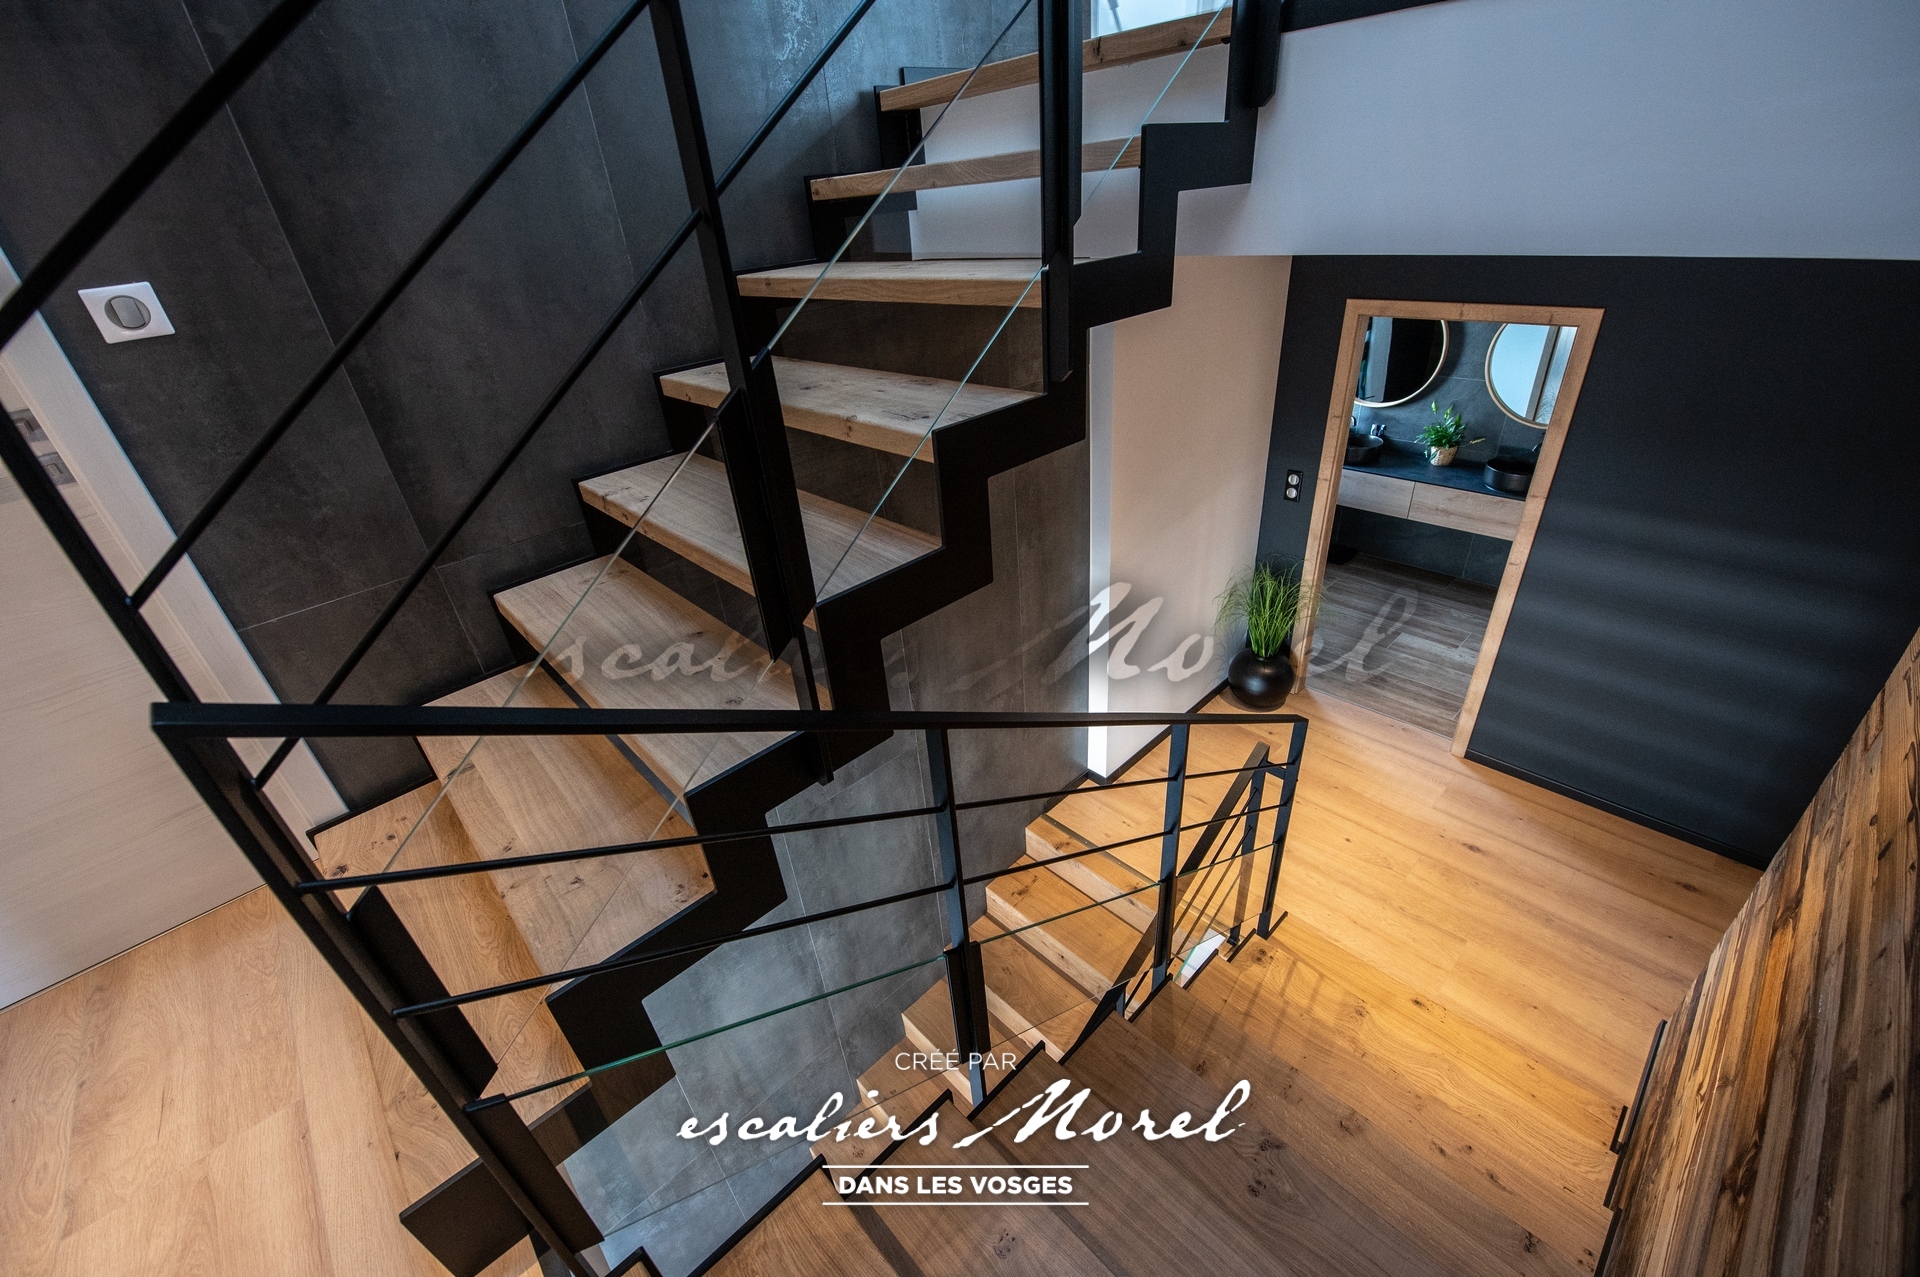 Escaliers-morel - Notre-entreprise - 10